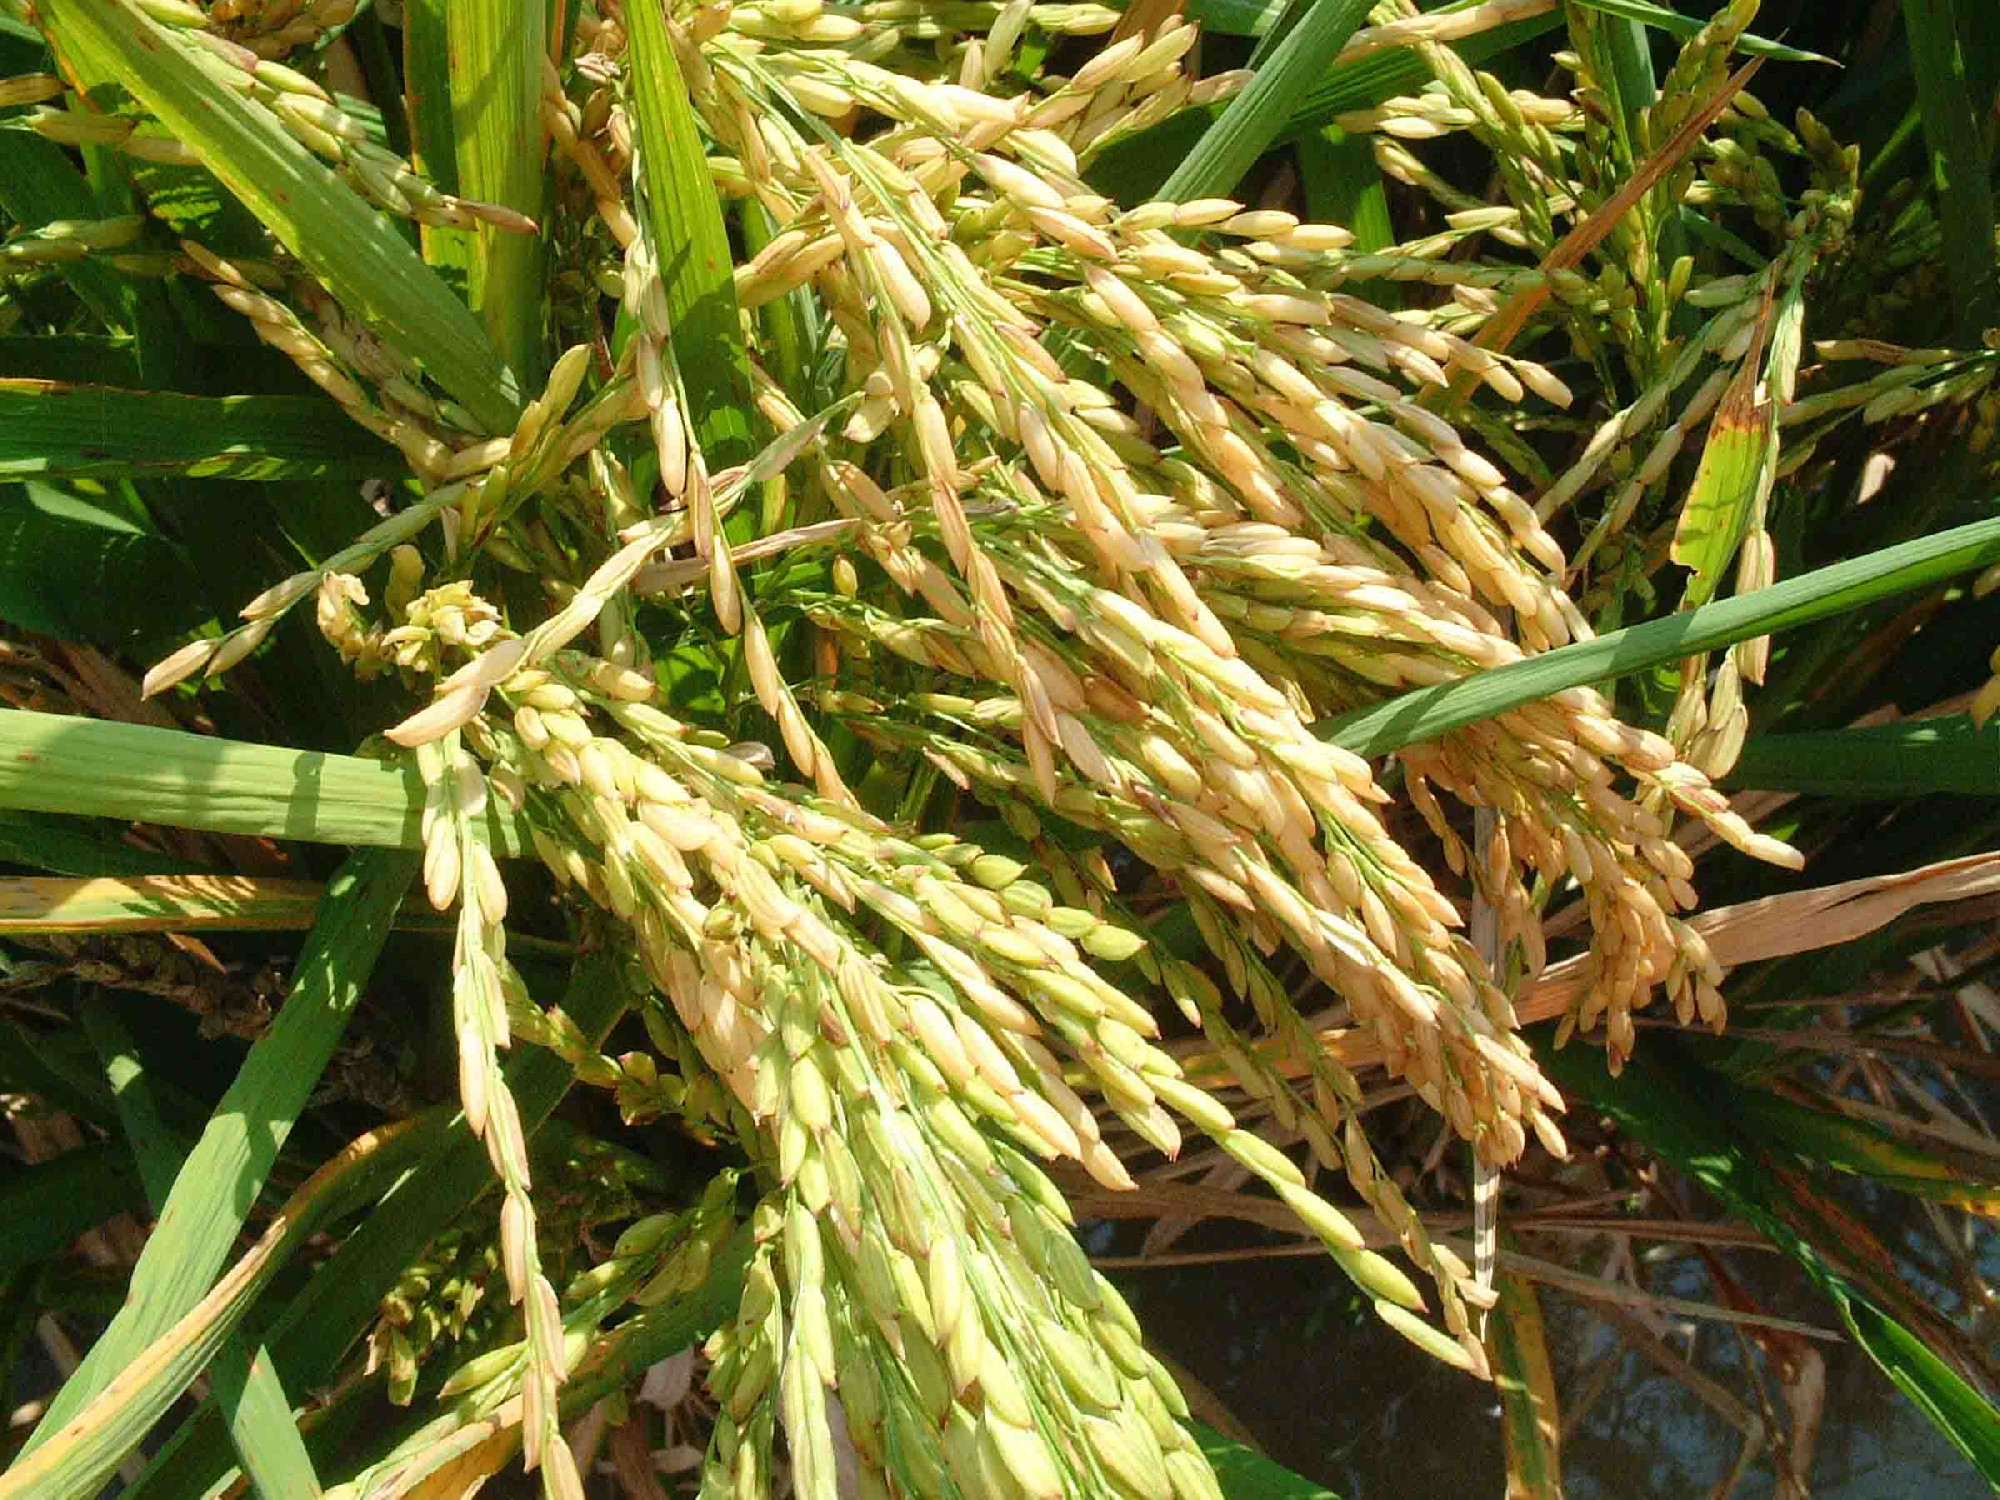 Betiltották a génmódosított rizs termesztését a Fülöp-szigeteken. És ez baj